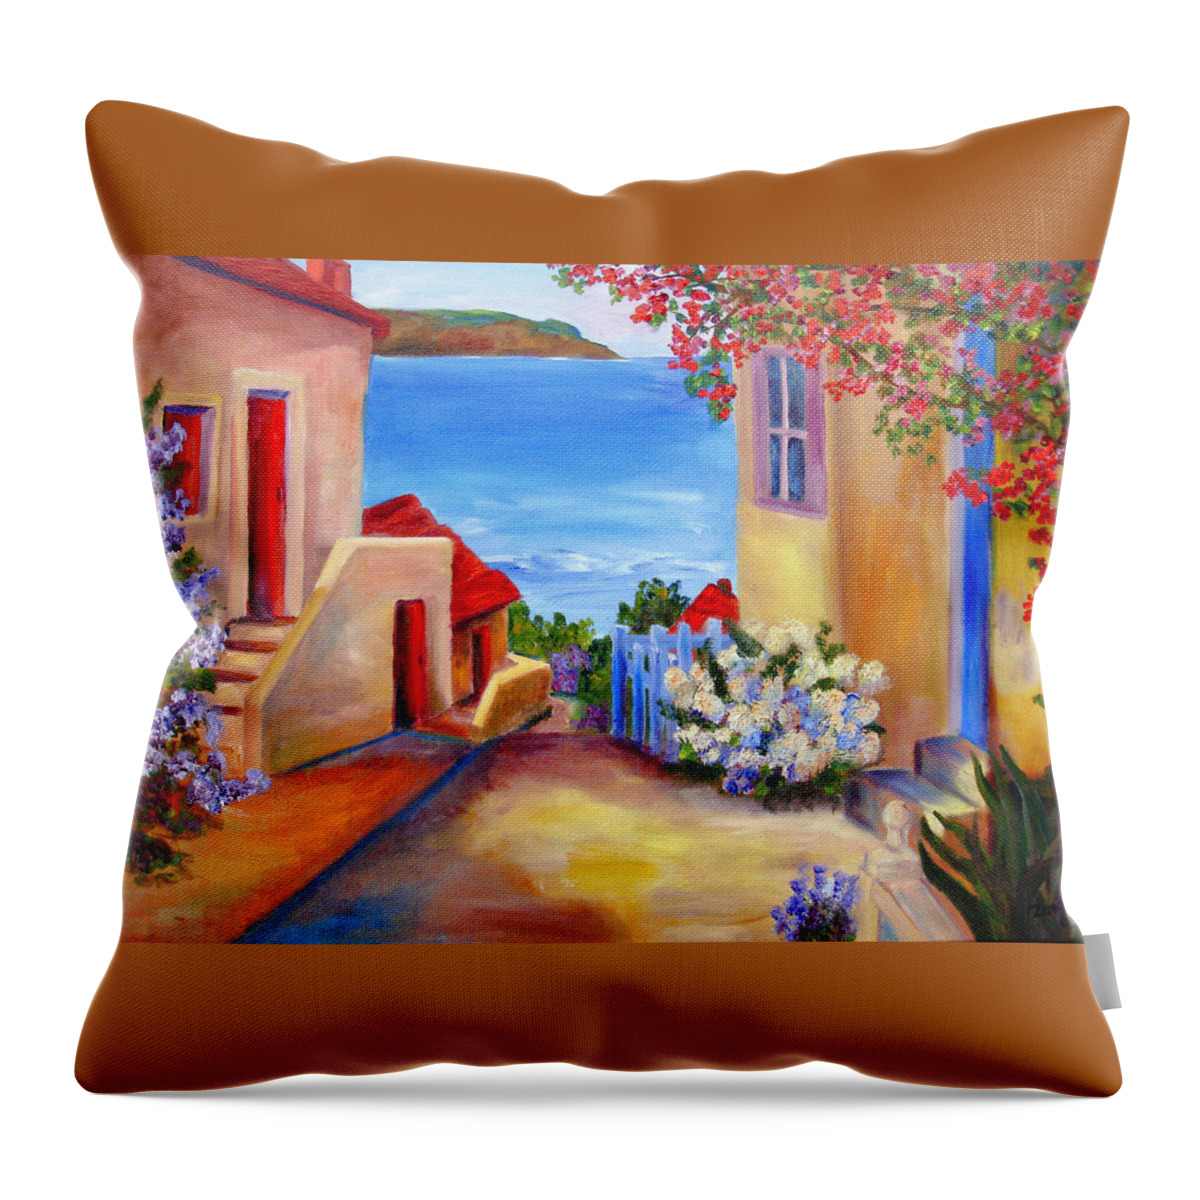 Italian Villa Throw Pillow featuring the painting Tuscany Village #2 by Mary Jo Zorad